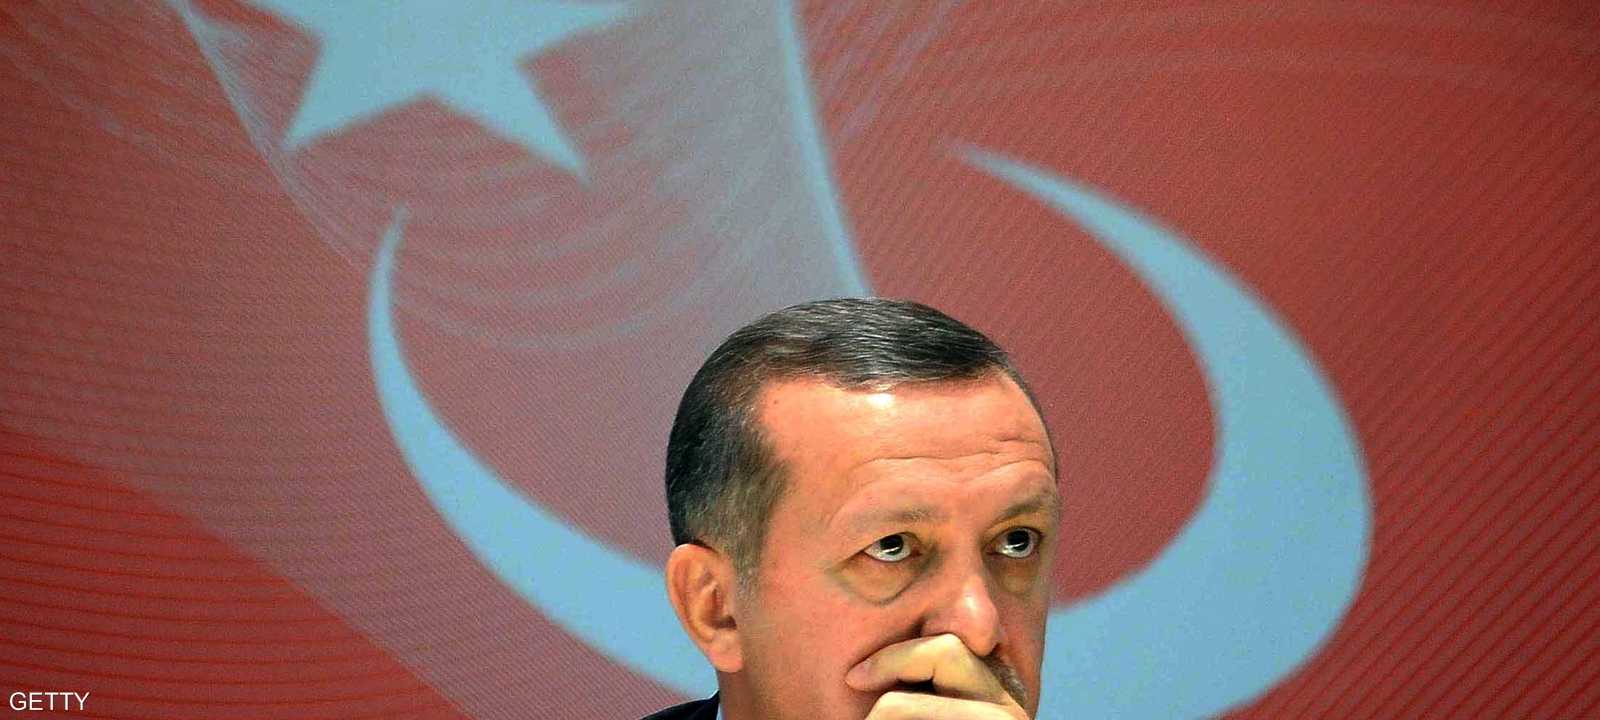 المعارضة انتقدت رفض اعتراف أردوغان بالهزيمة في المدينة